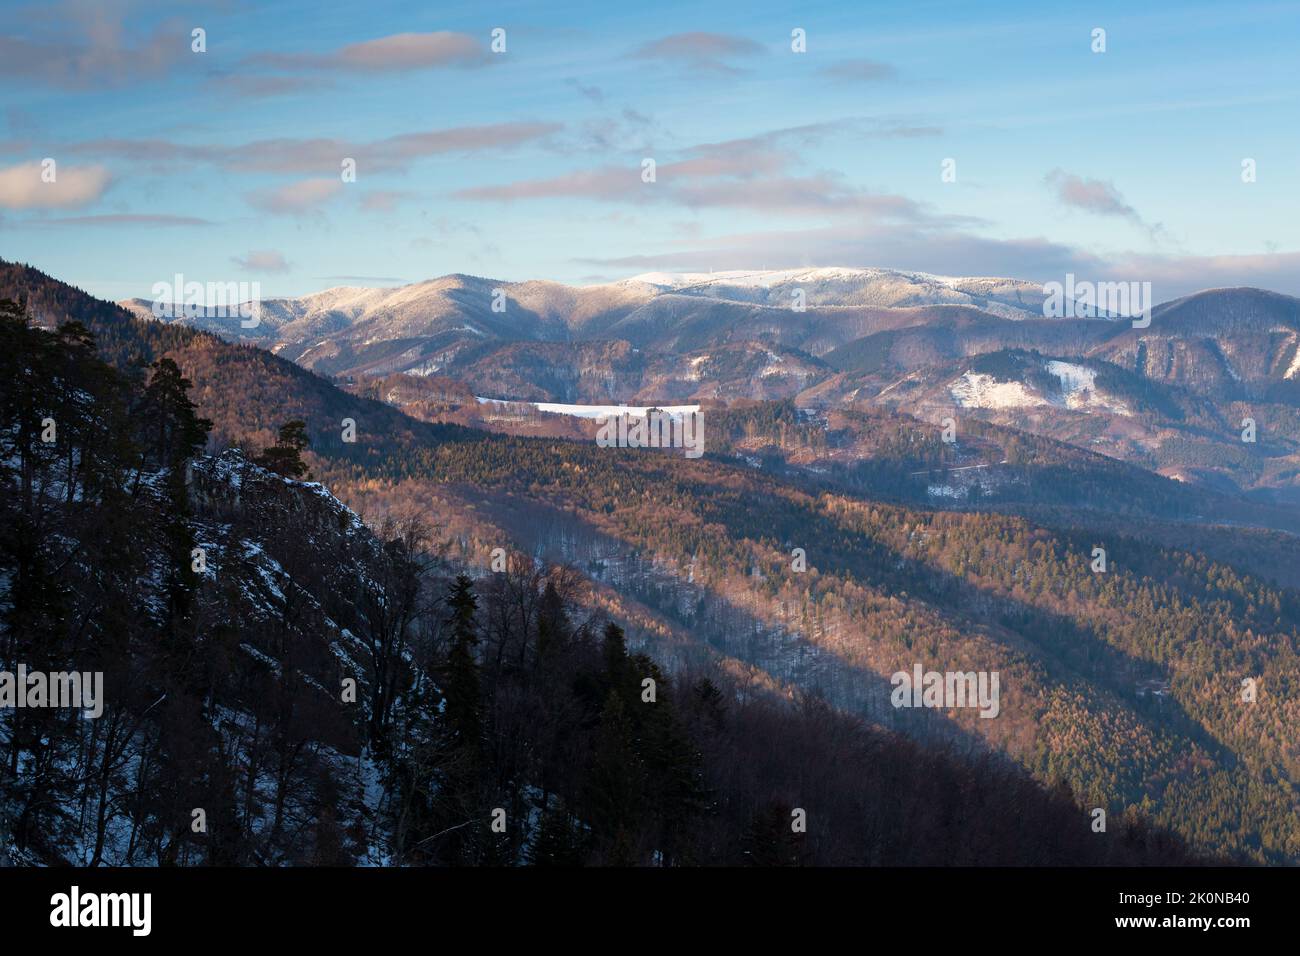 Mala Fatra mountain range in Slovakia. Stock Photo